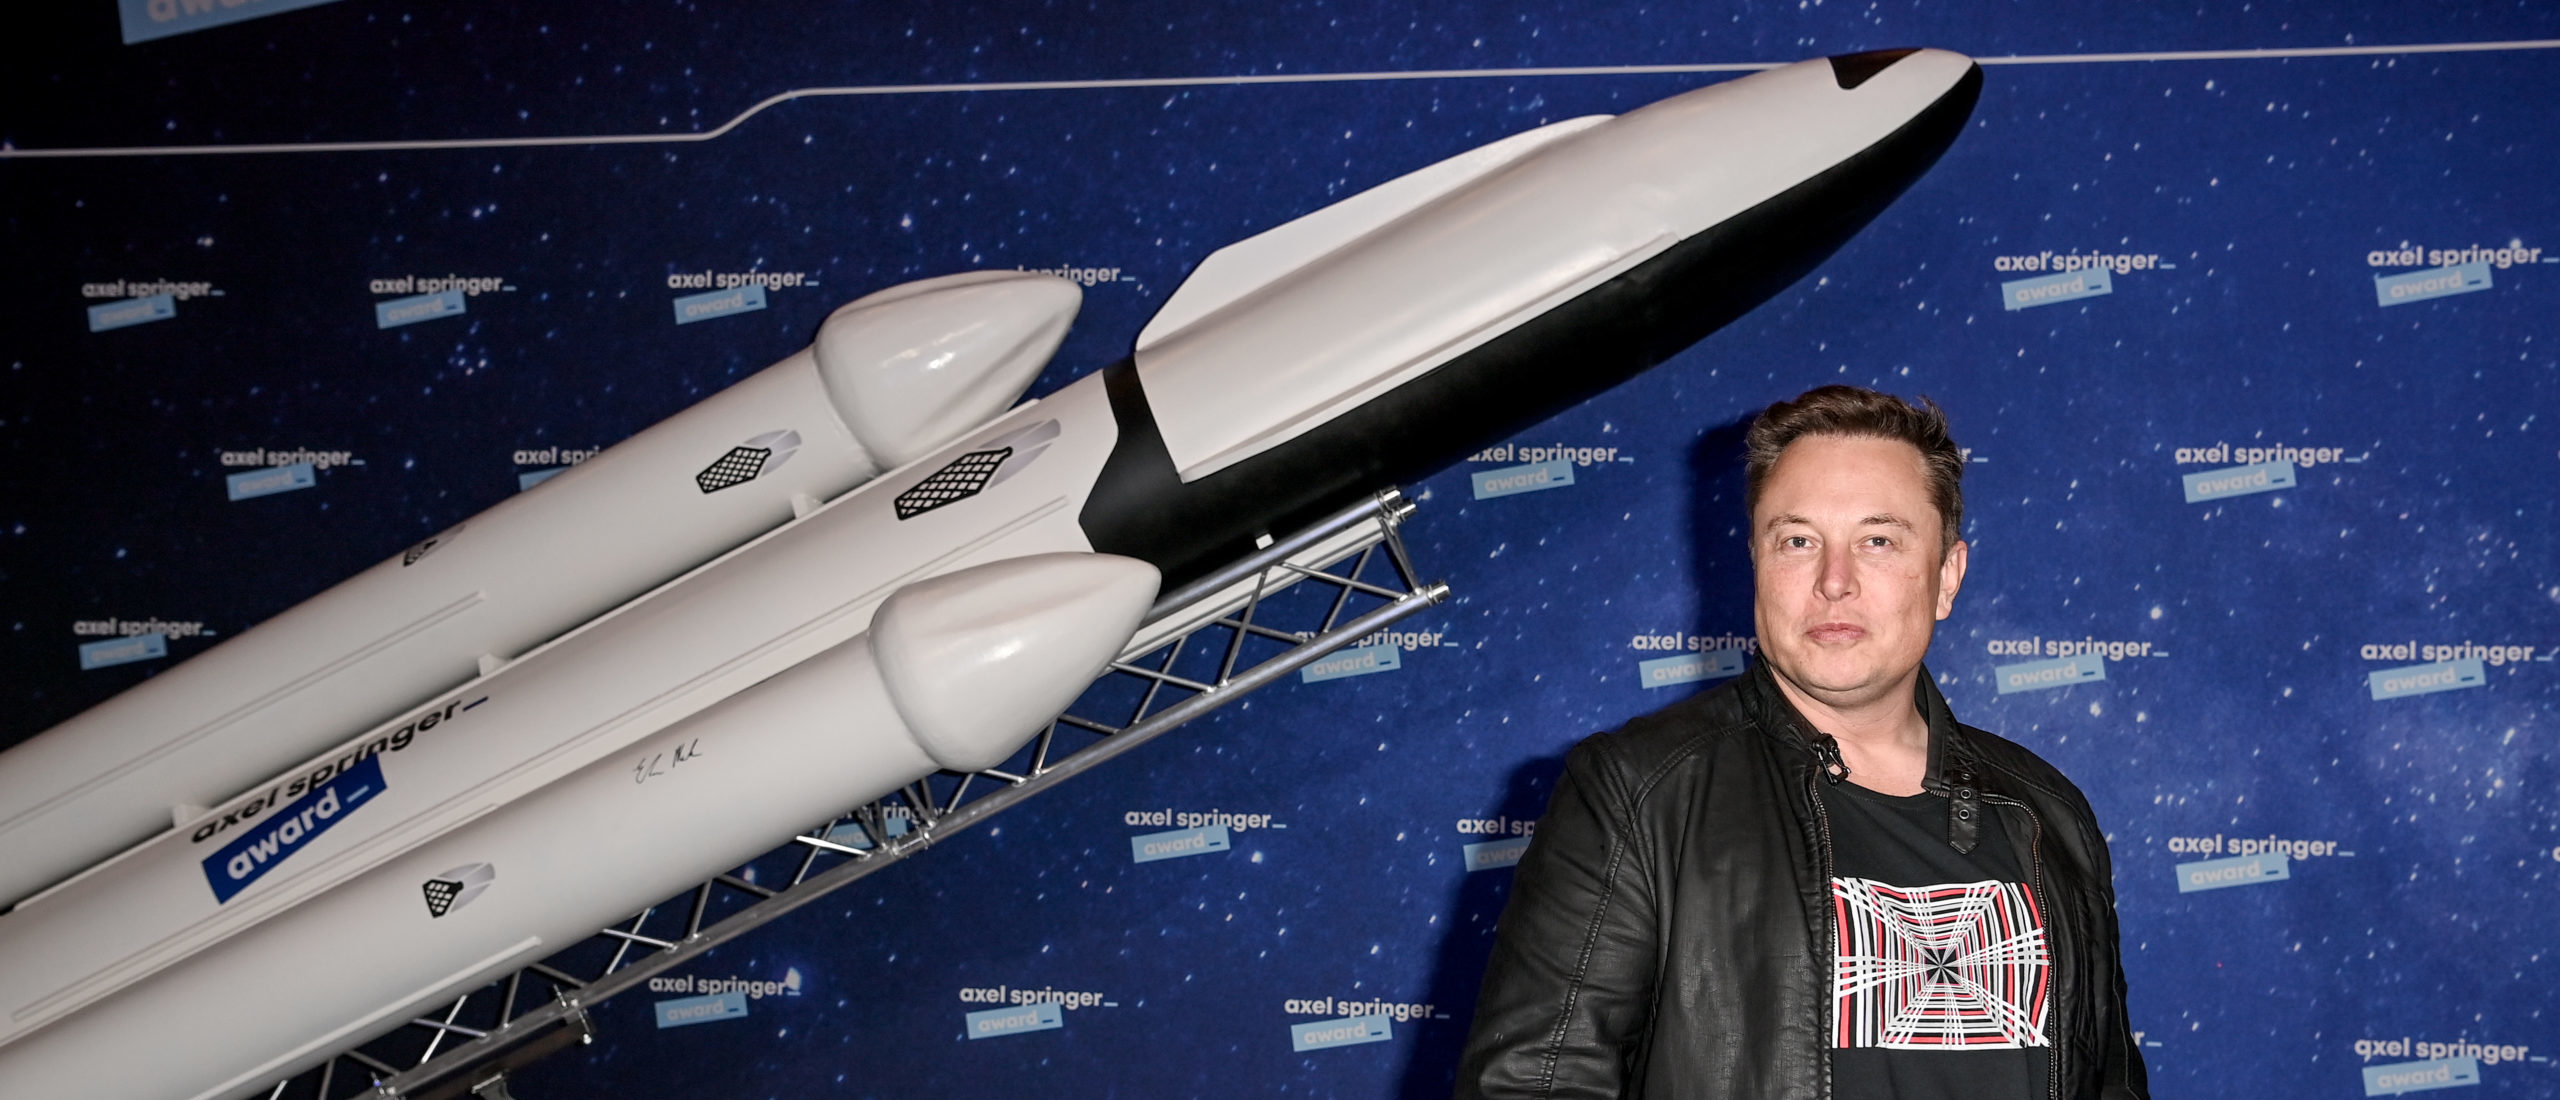 Elon musk shows rocket porn